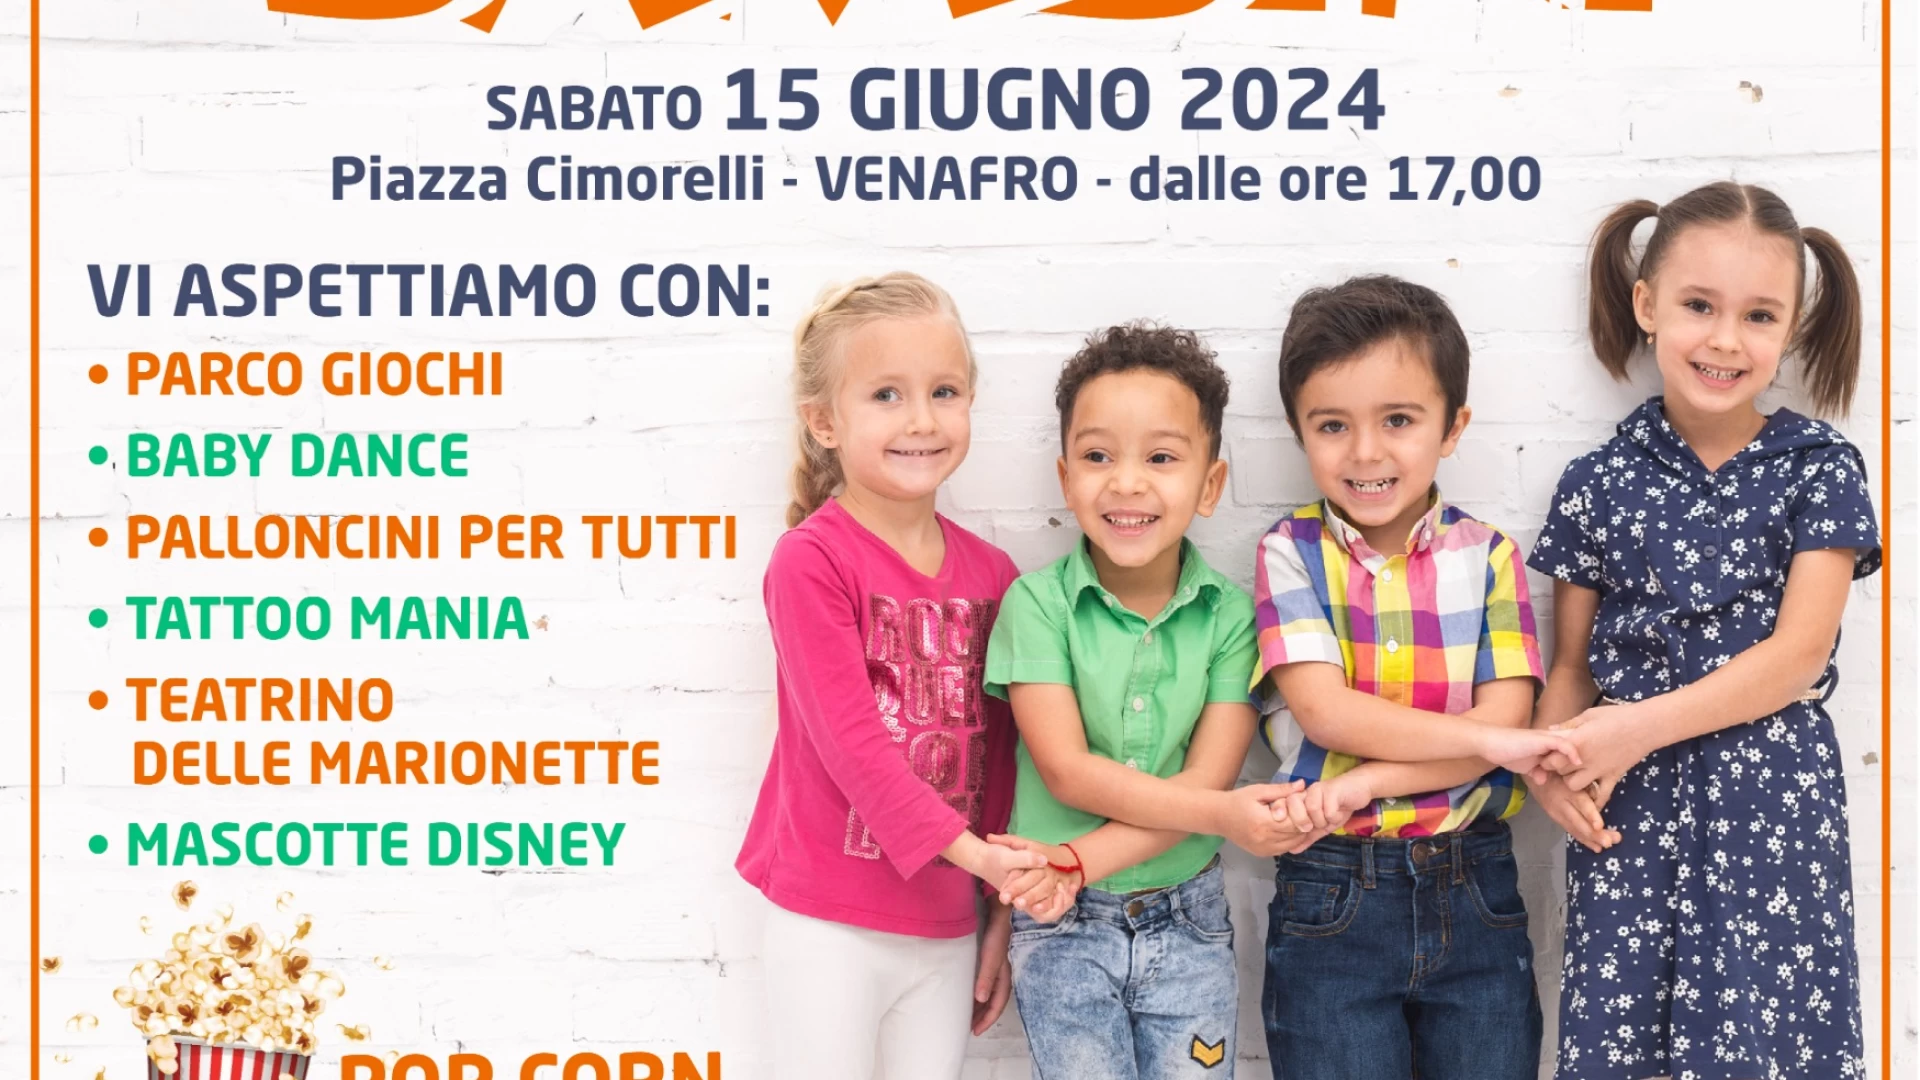 Venafro: sabato 15 giugno la festa dei bambini in Piazza Cimorelli. Evento promosso dal Comitato Festa San Nicandro dalla Farmacia Santa Daria.